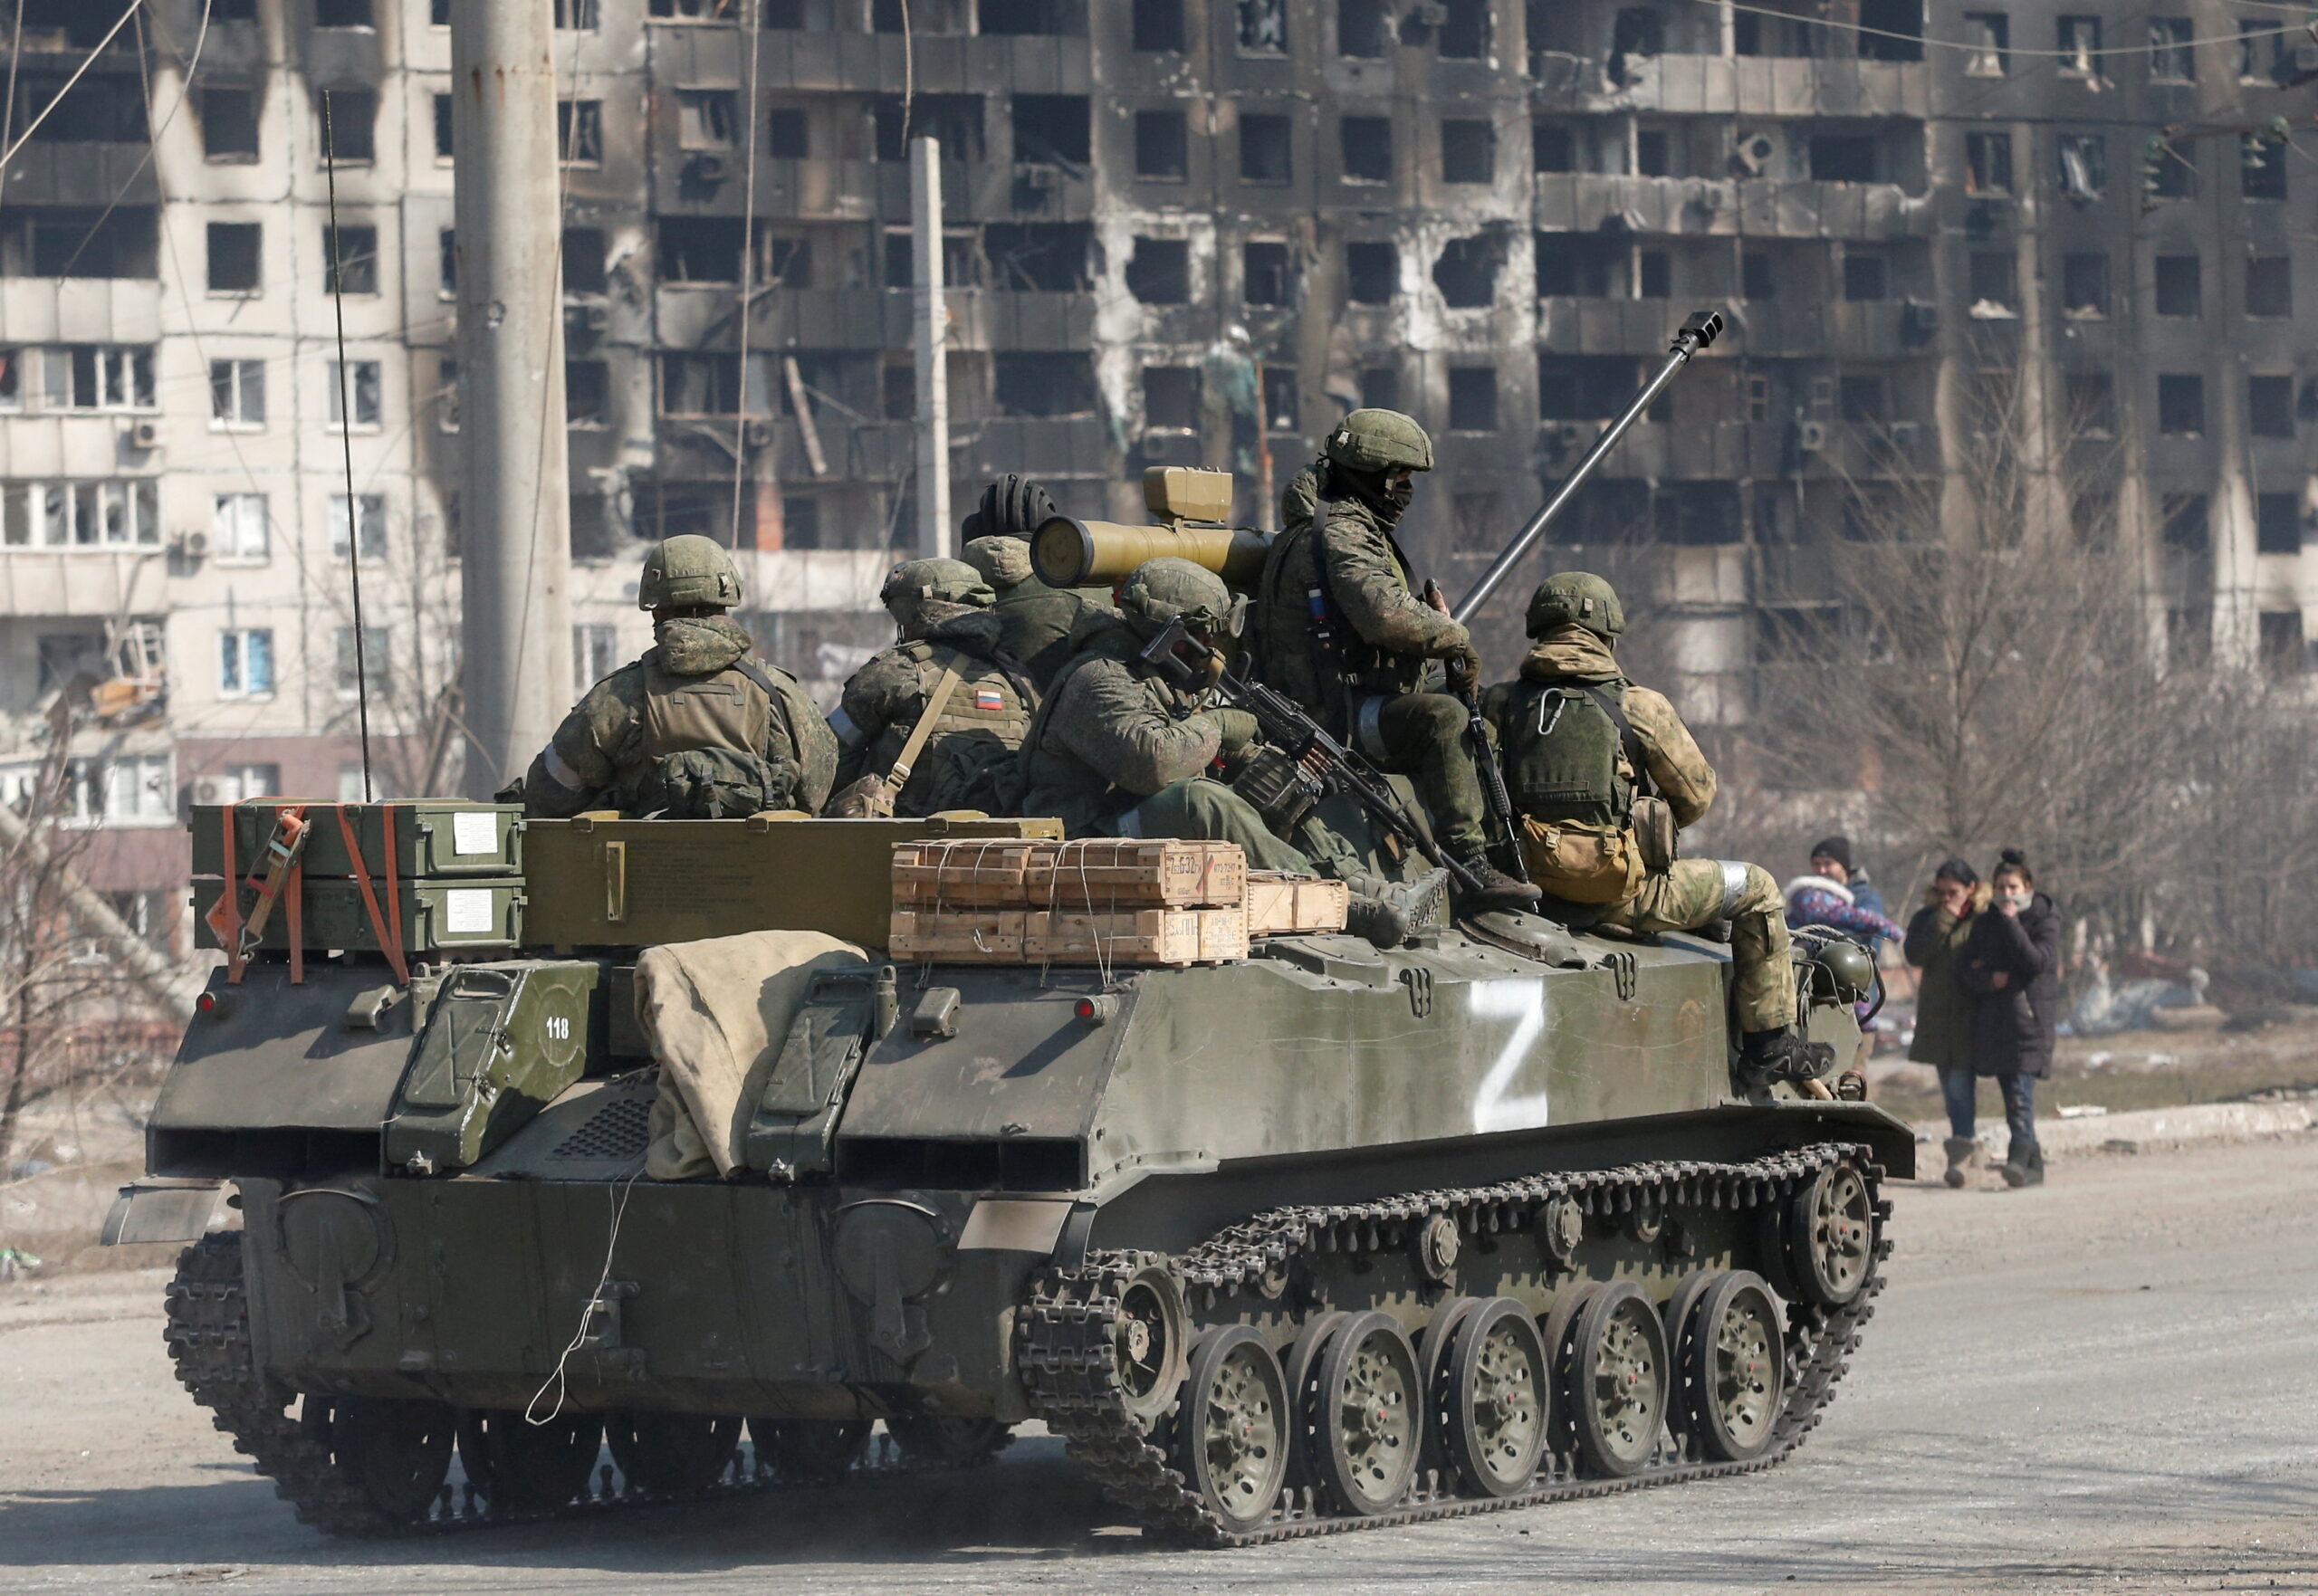 El precio en Rusia por rechazar la guerra: amenazas a activistas y militares despedidos